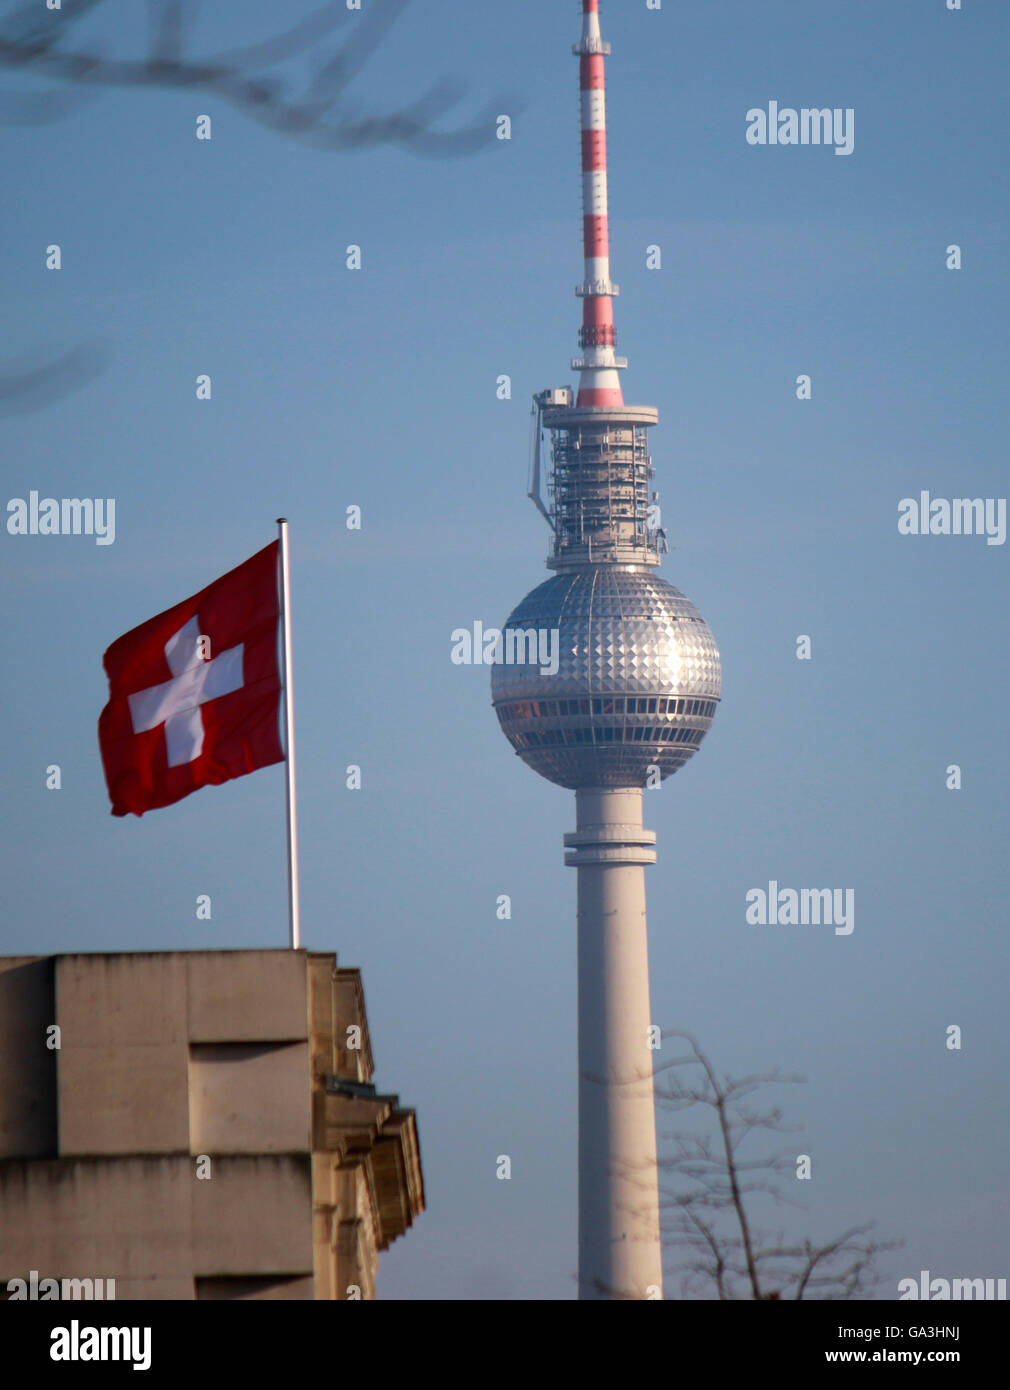 Schweizer fotografías e imágenes de alta resolución - Alamy